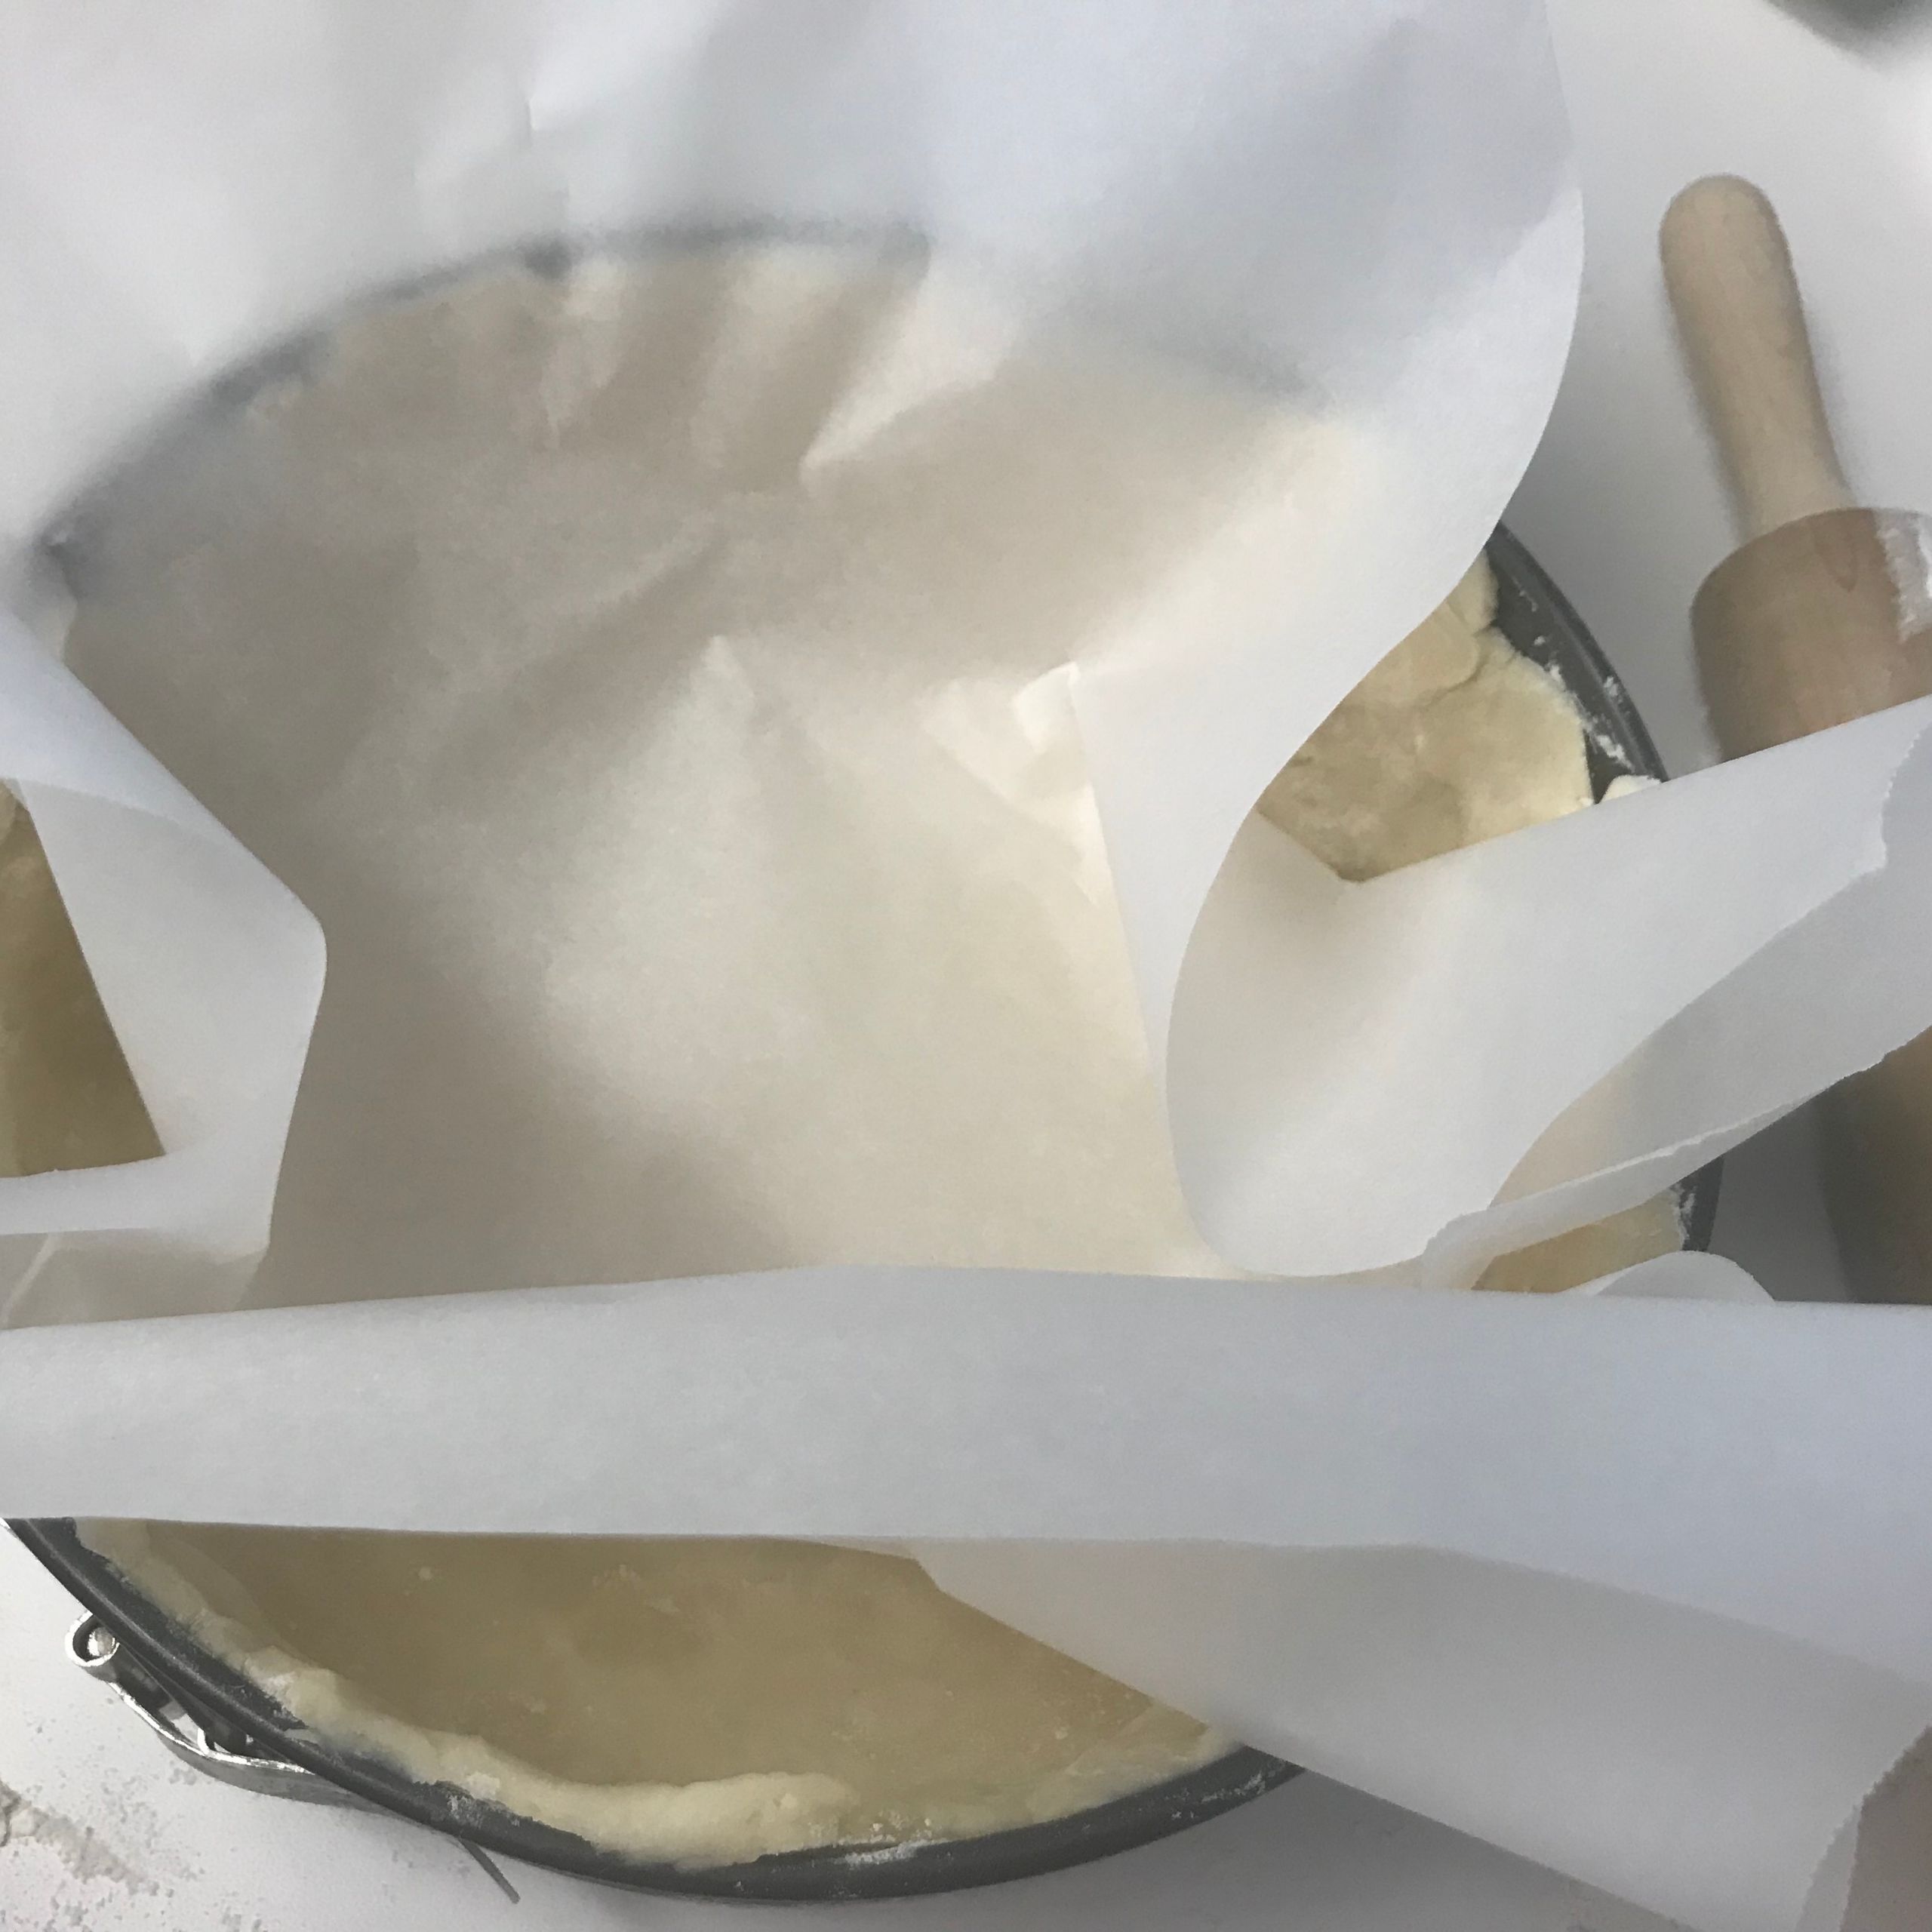 Parchment lined dough